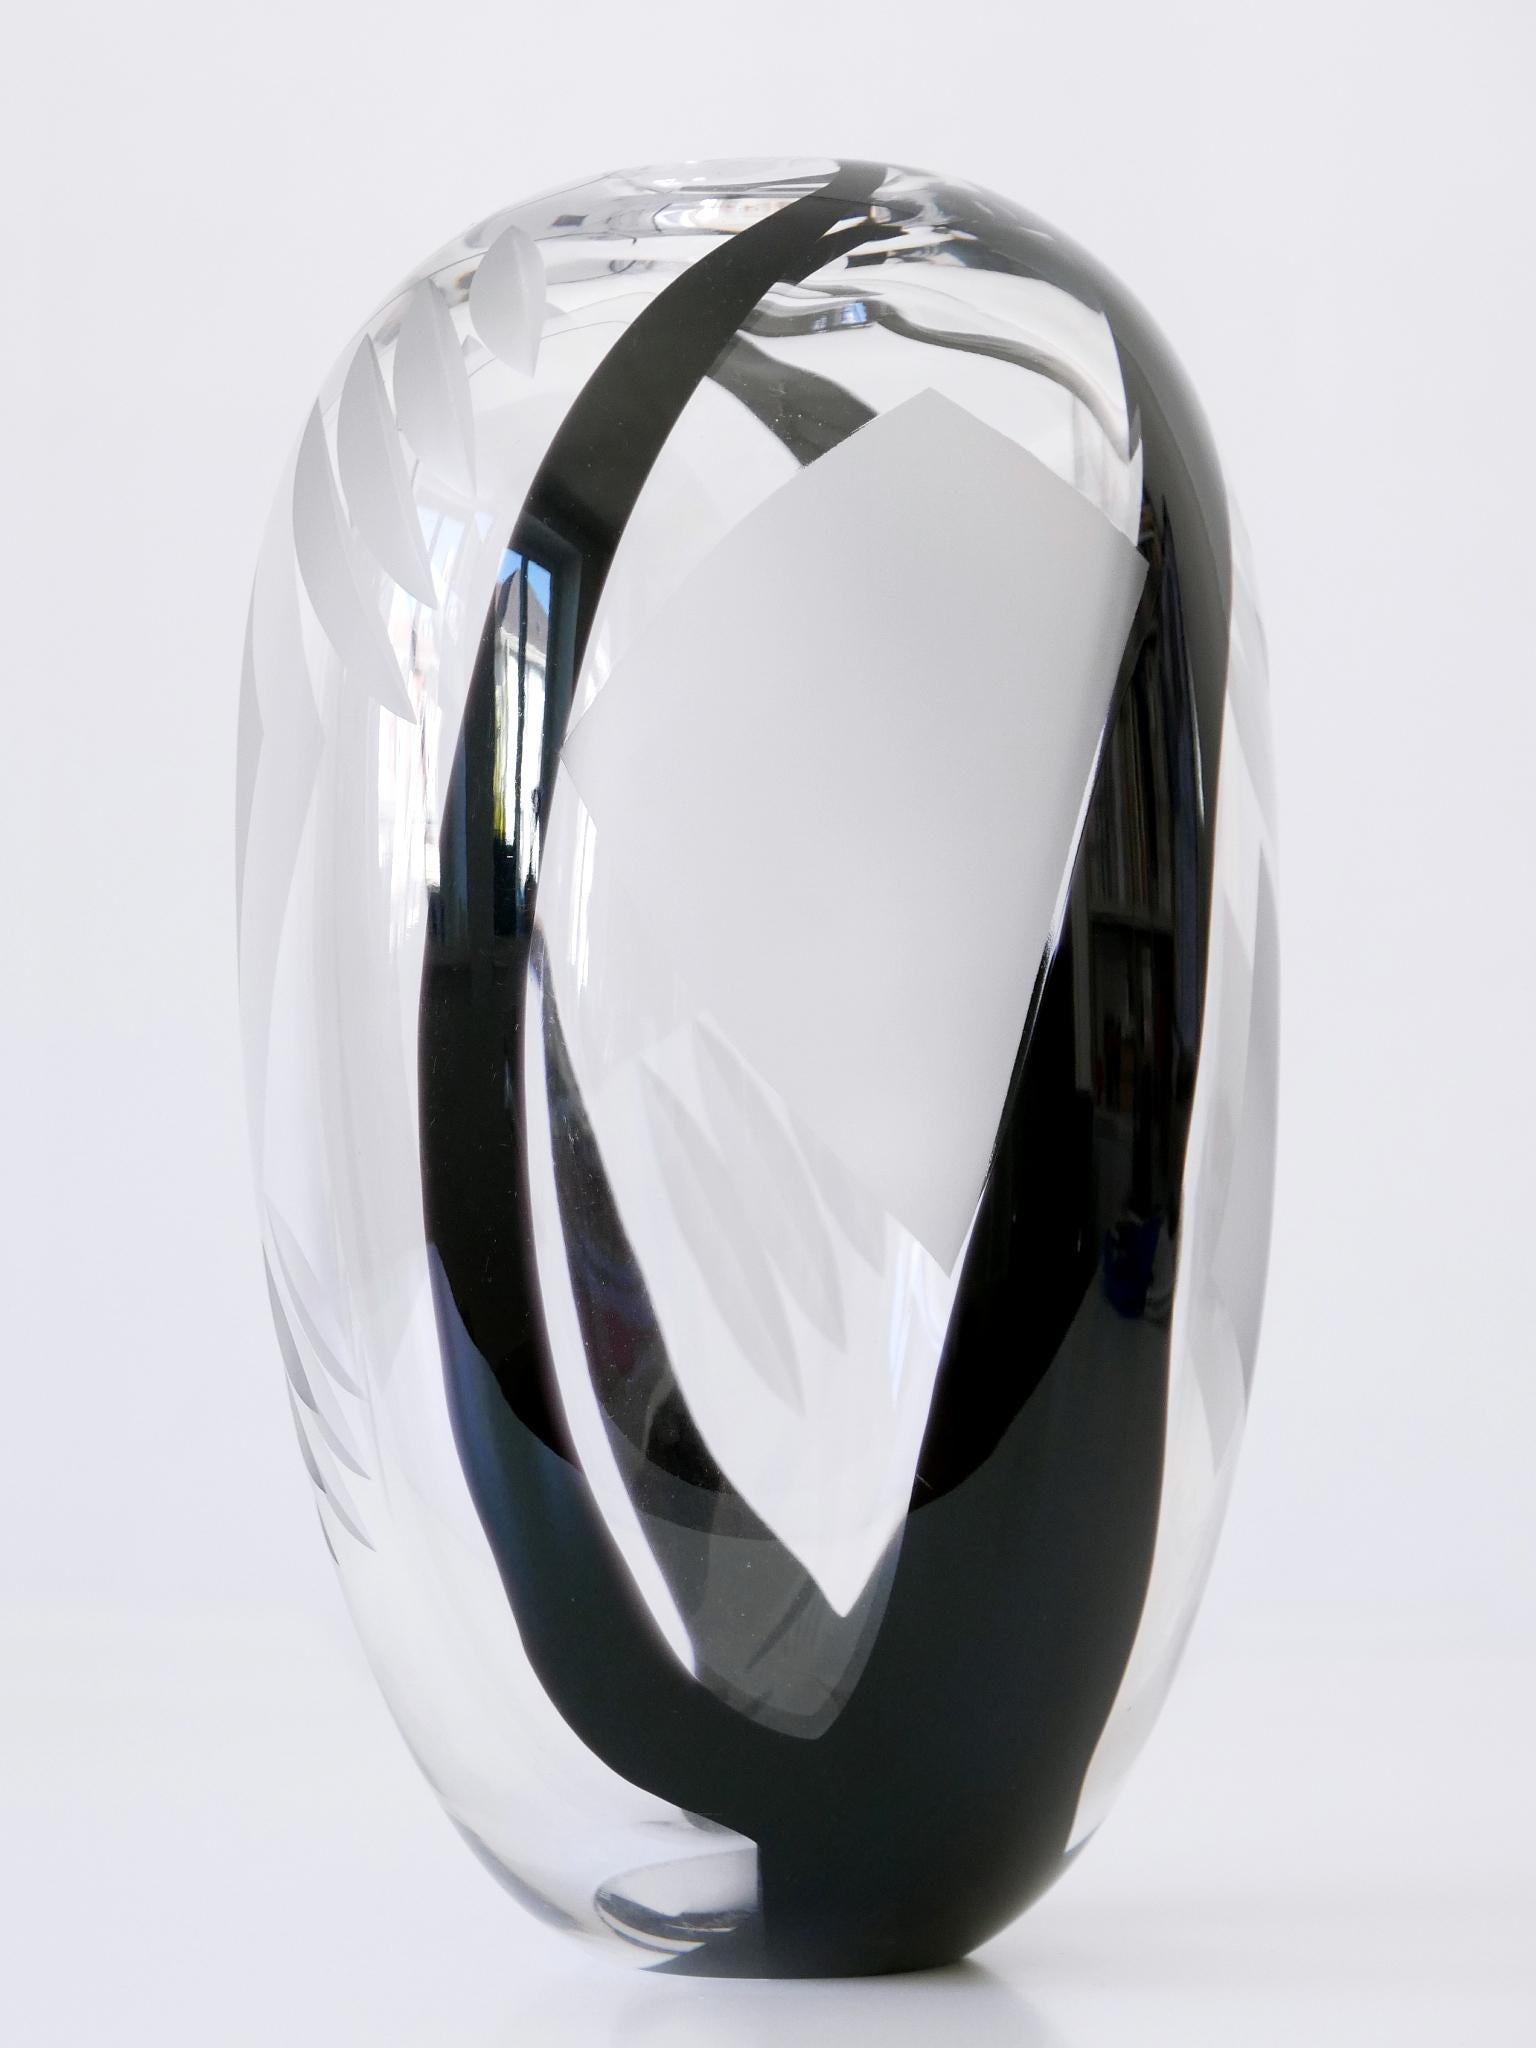 Unique Art Glass Vase by Anna Ehrer for Kosta Boda Sweden 1992 Signed For Sale 5